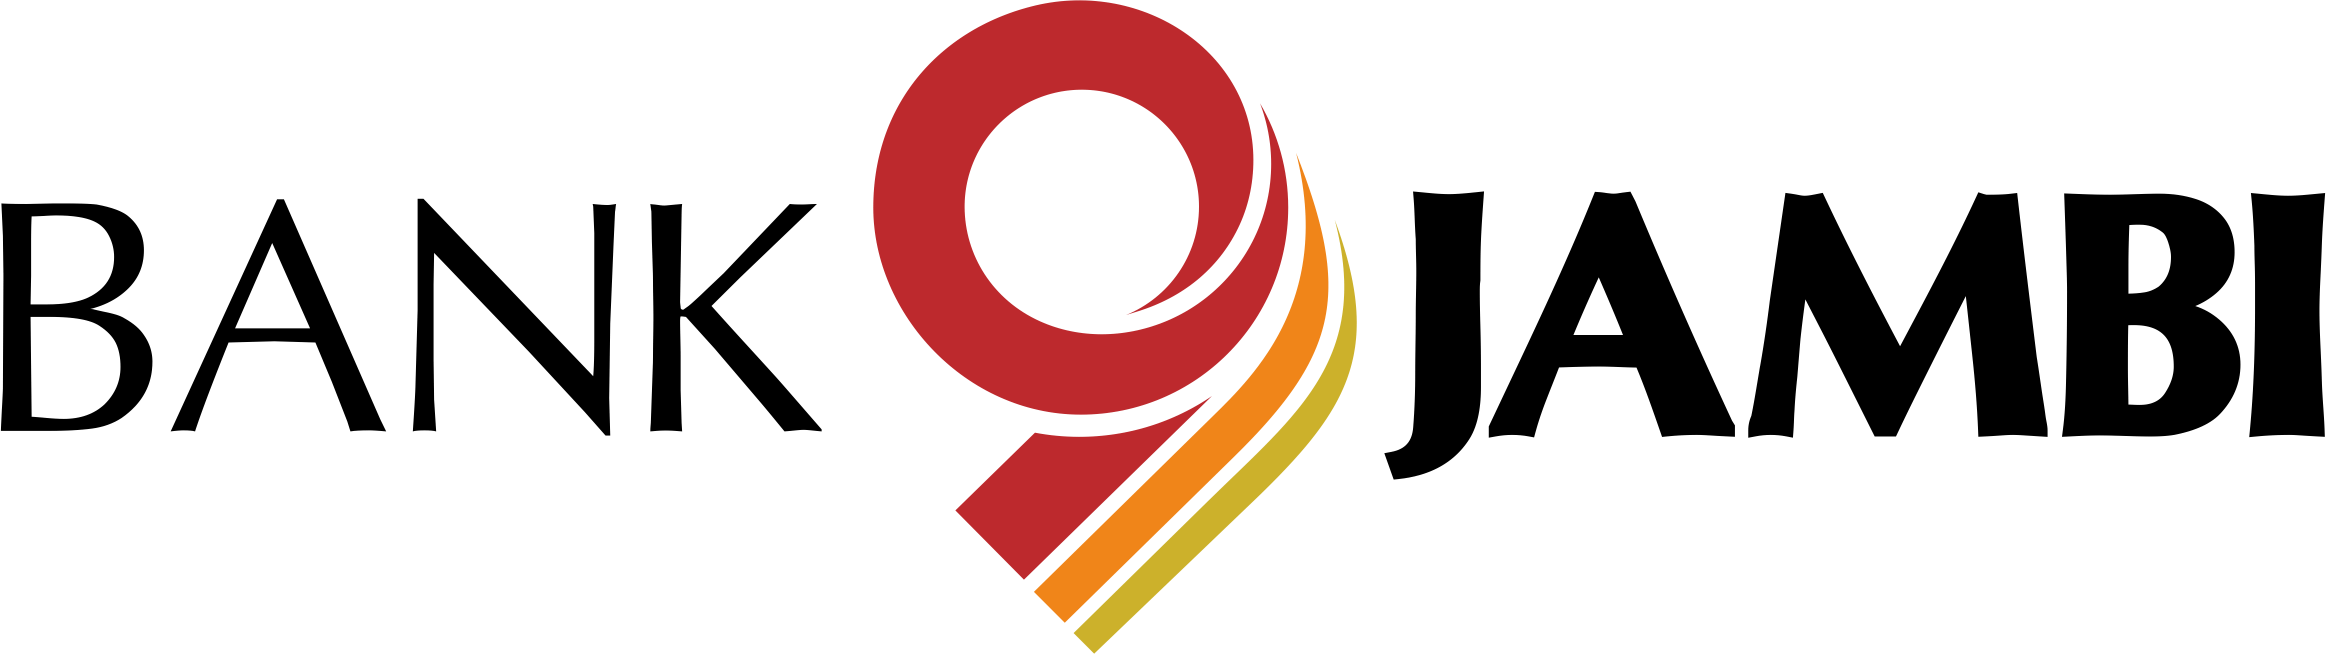 logo bank jambi